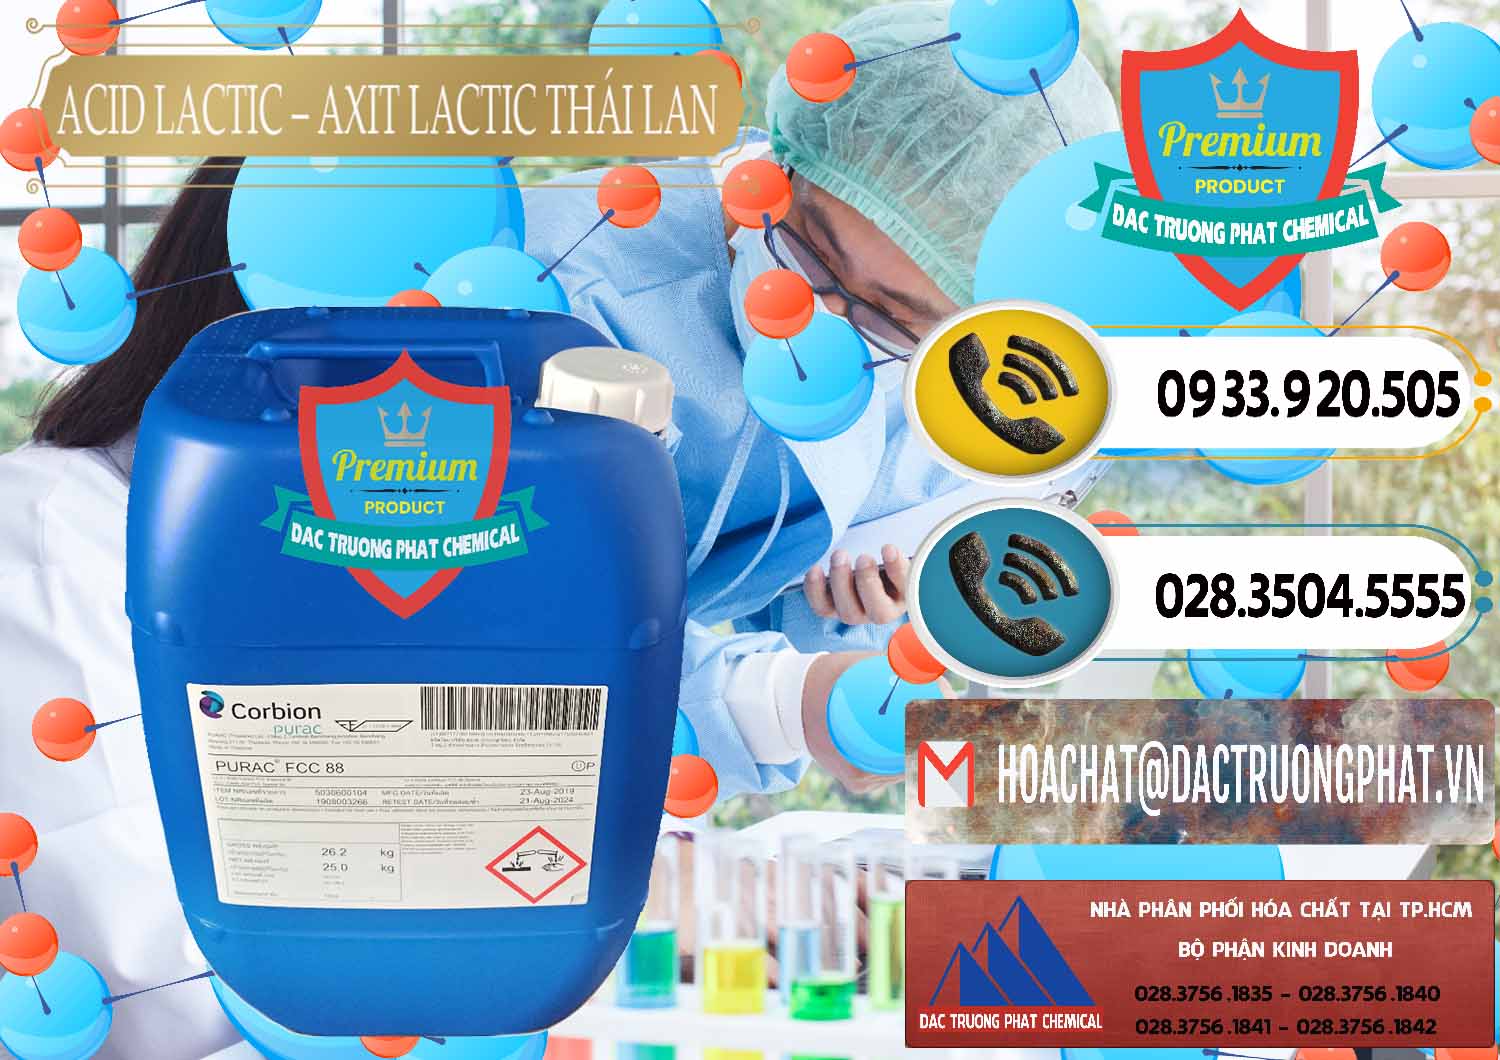 Nơi cung cấp _ bán Acid Lactic – Axit Lactic Thái Lan Purac FCC 88 - 0012 - Nhập khẩu _ phân phối hóa chất tại TP.HCM - hoachatdetnhuom.vn